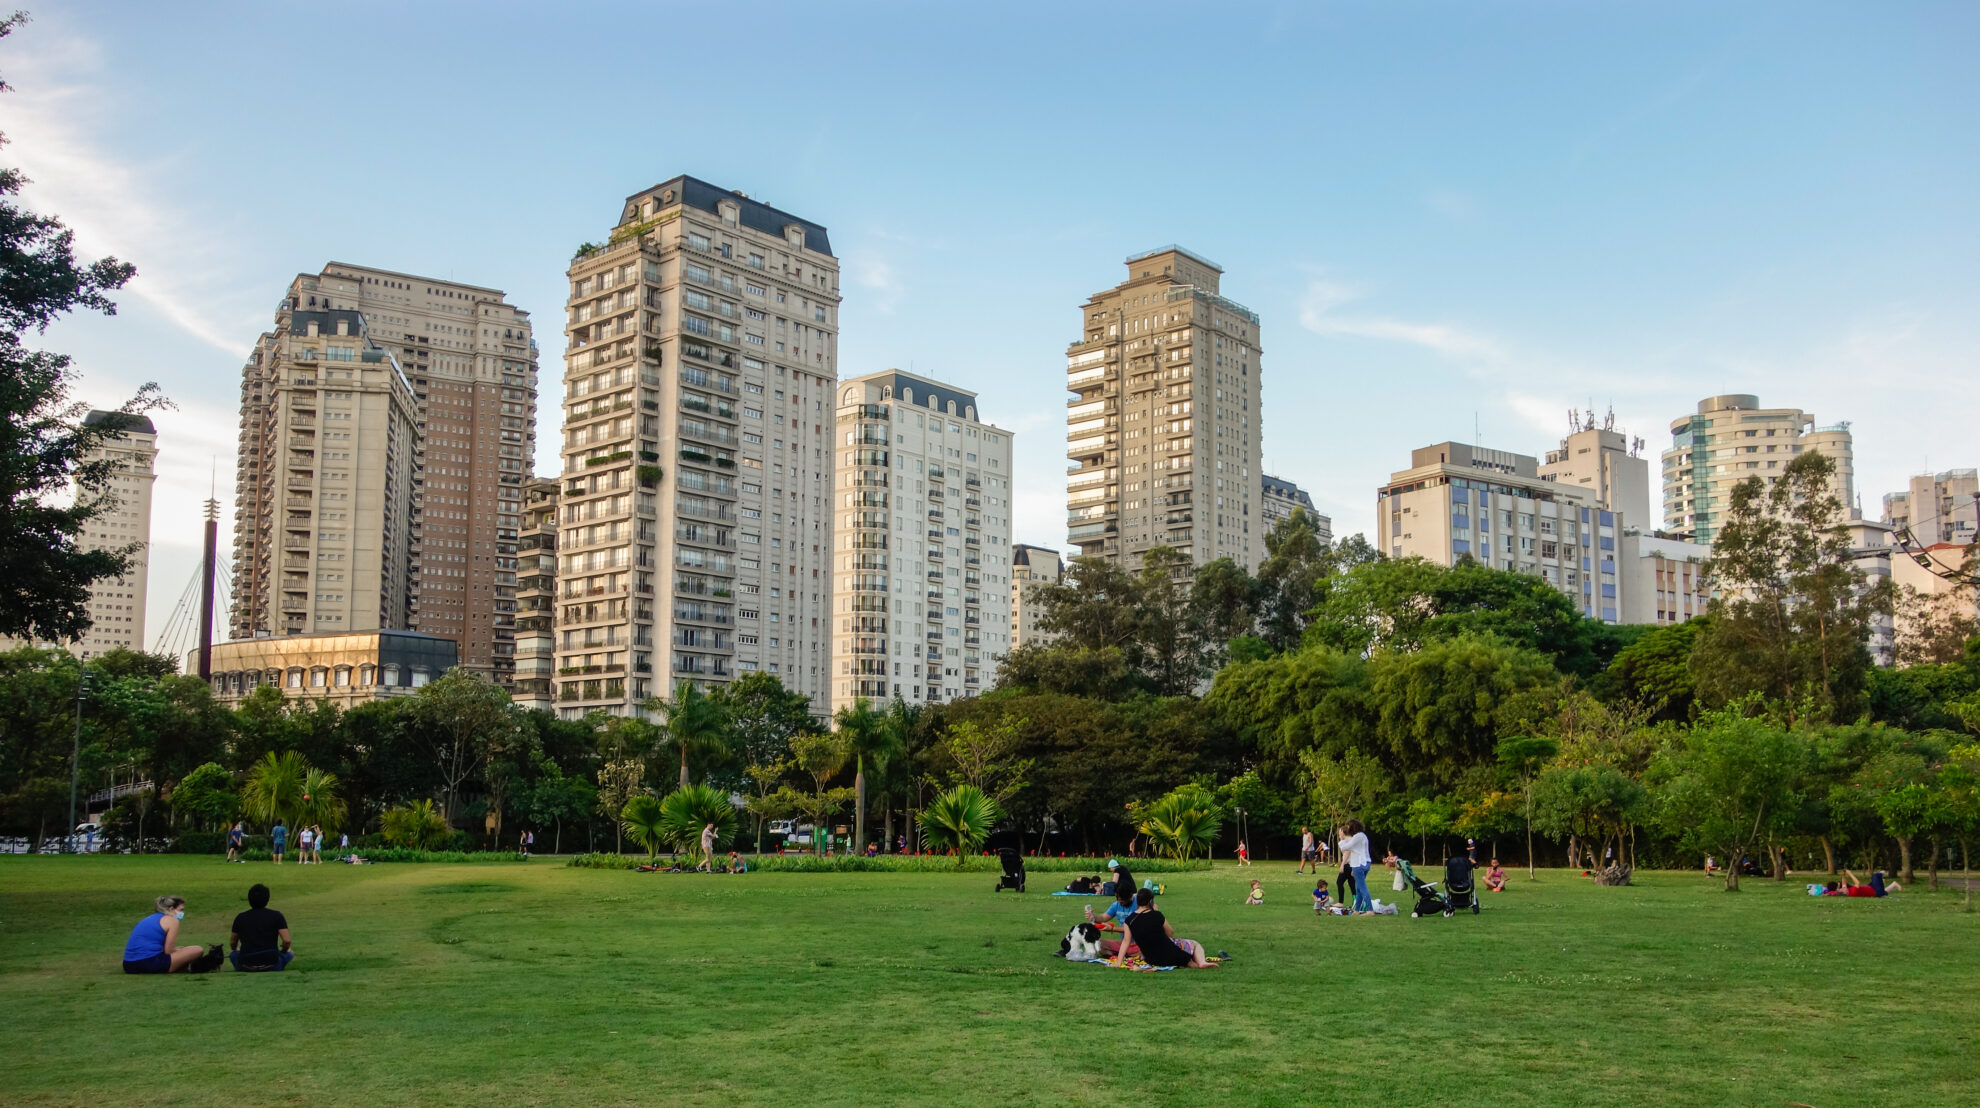 Parques saudáveis, pessoas saudáveis: como o contato com parques naturais e urbanos pode auxiliar uma sociedade mais saudável